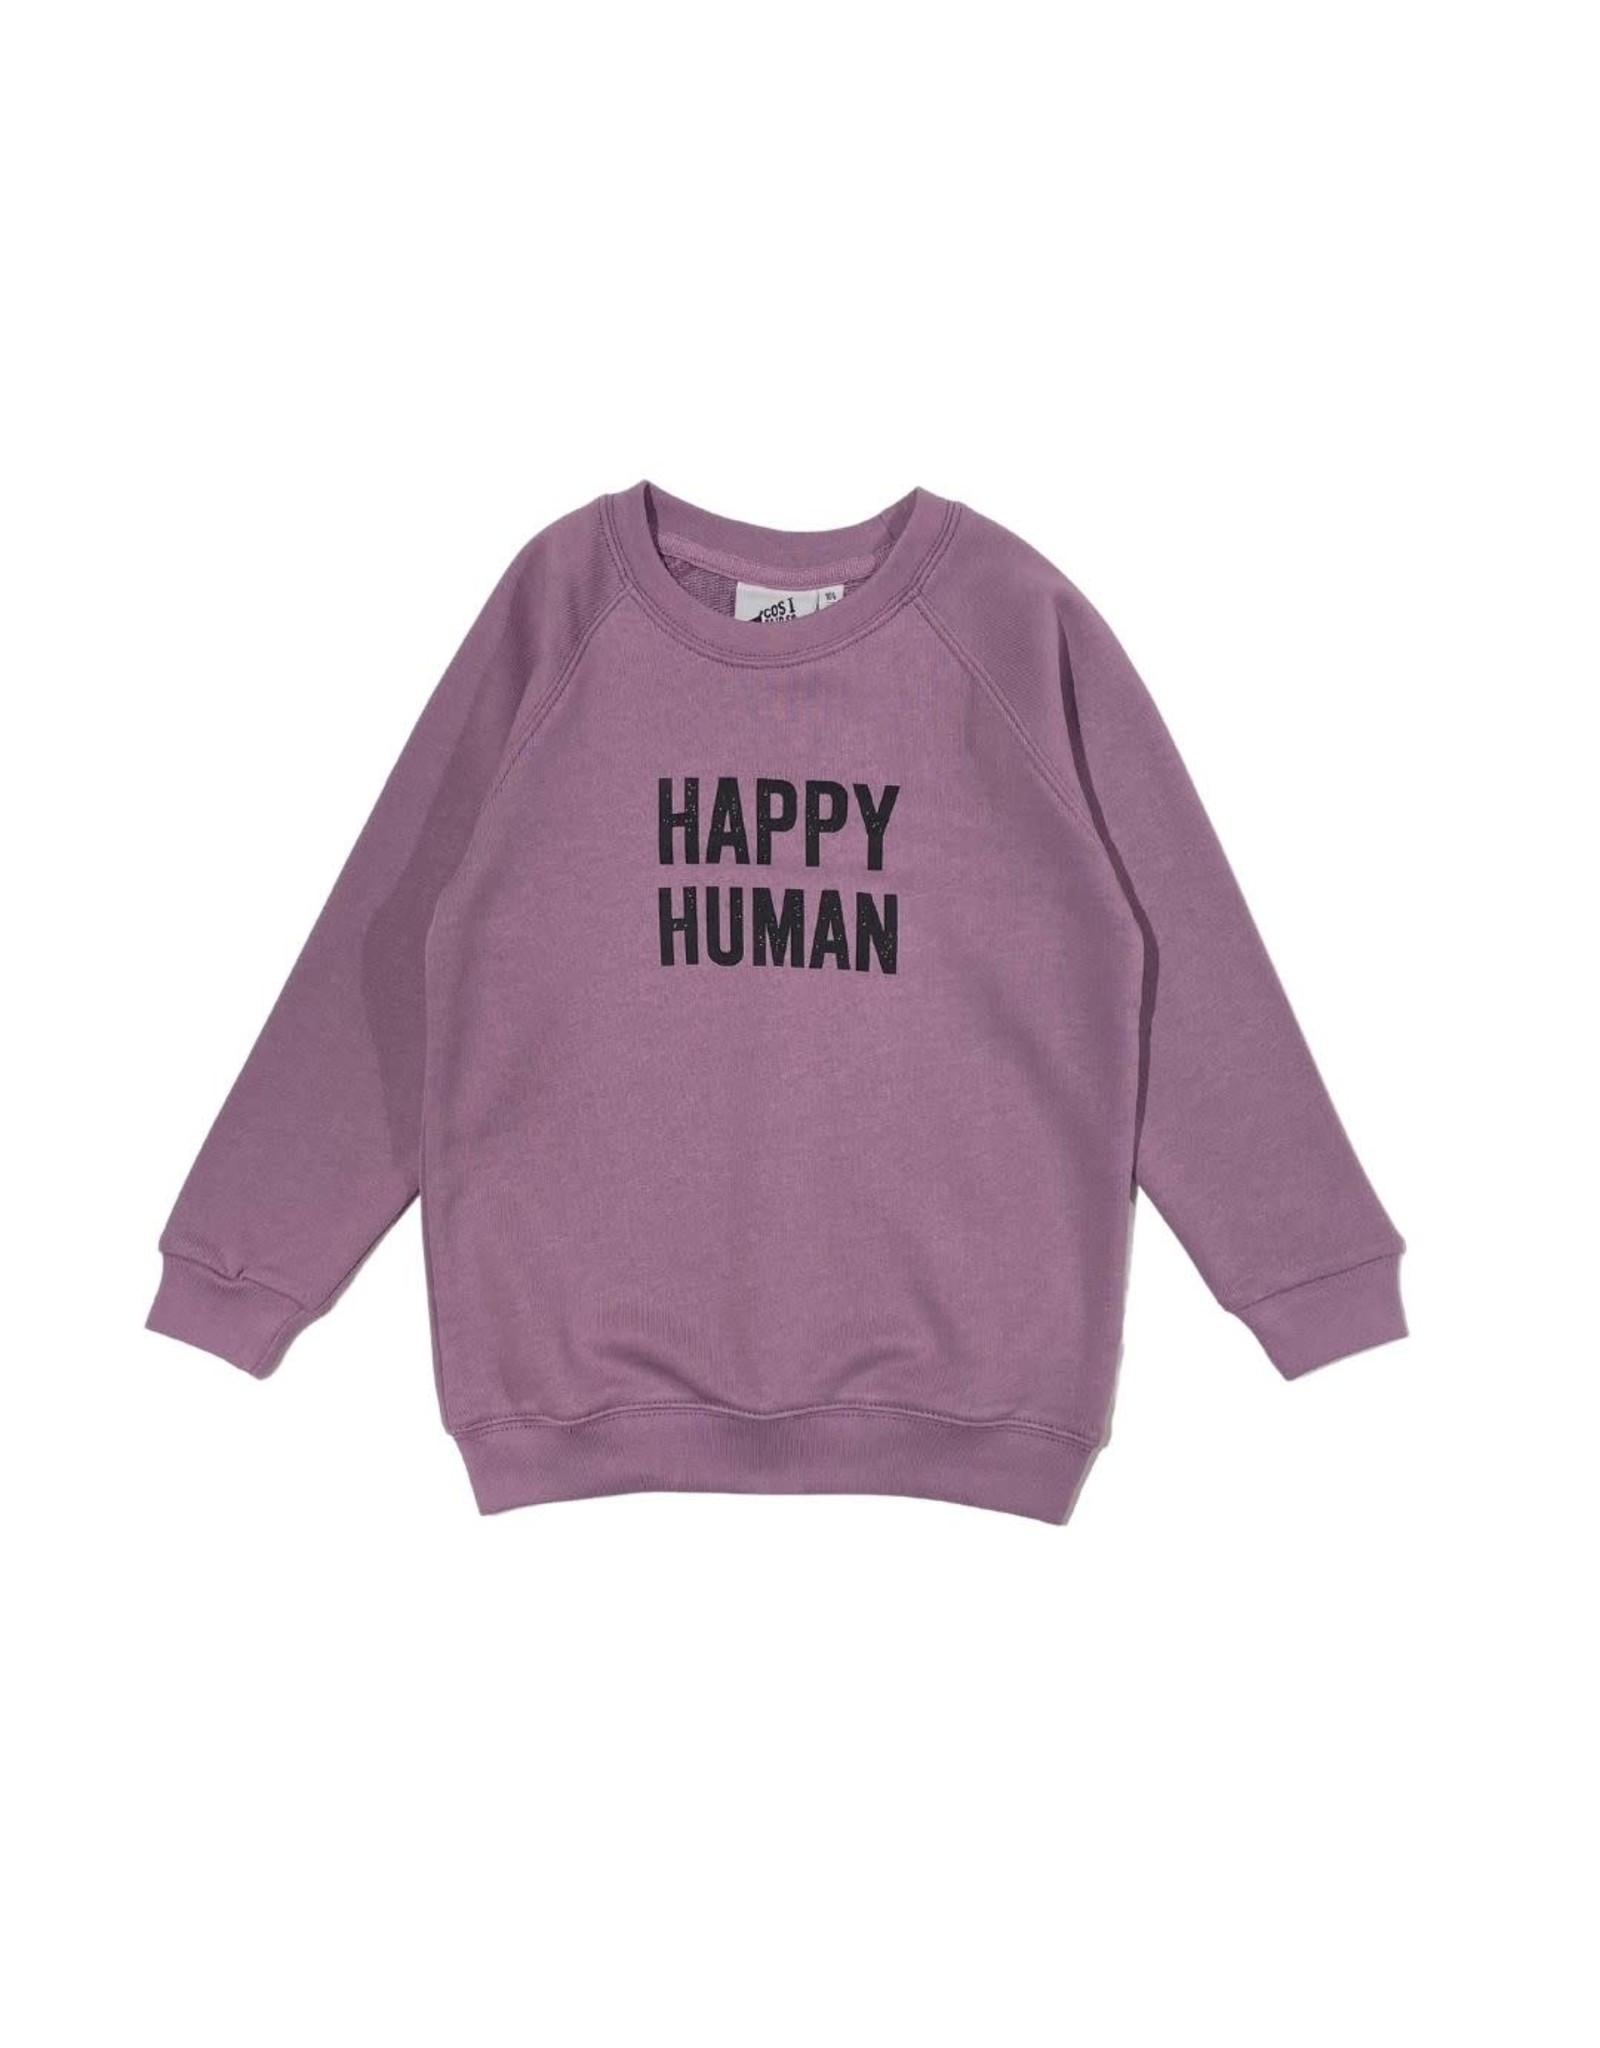 Cos I Said So Cos I Said So - Happy Human Sweater - Grape